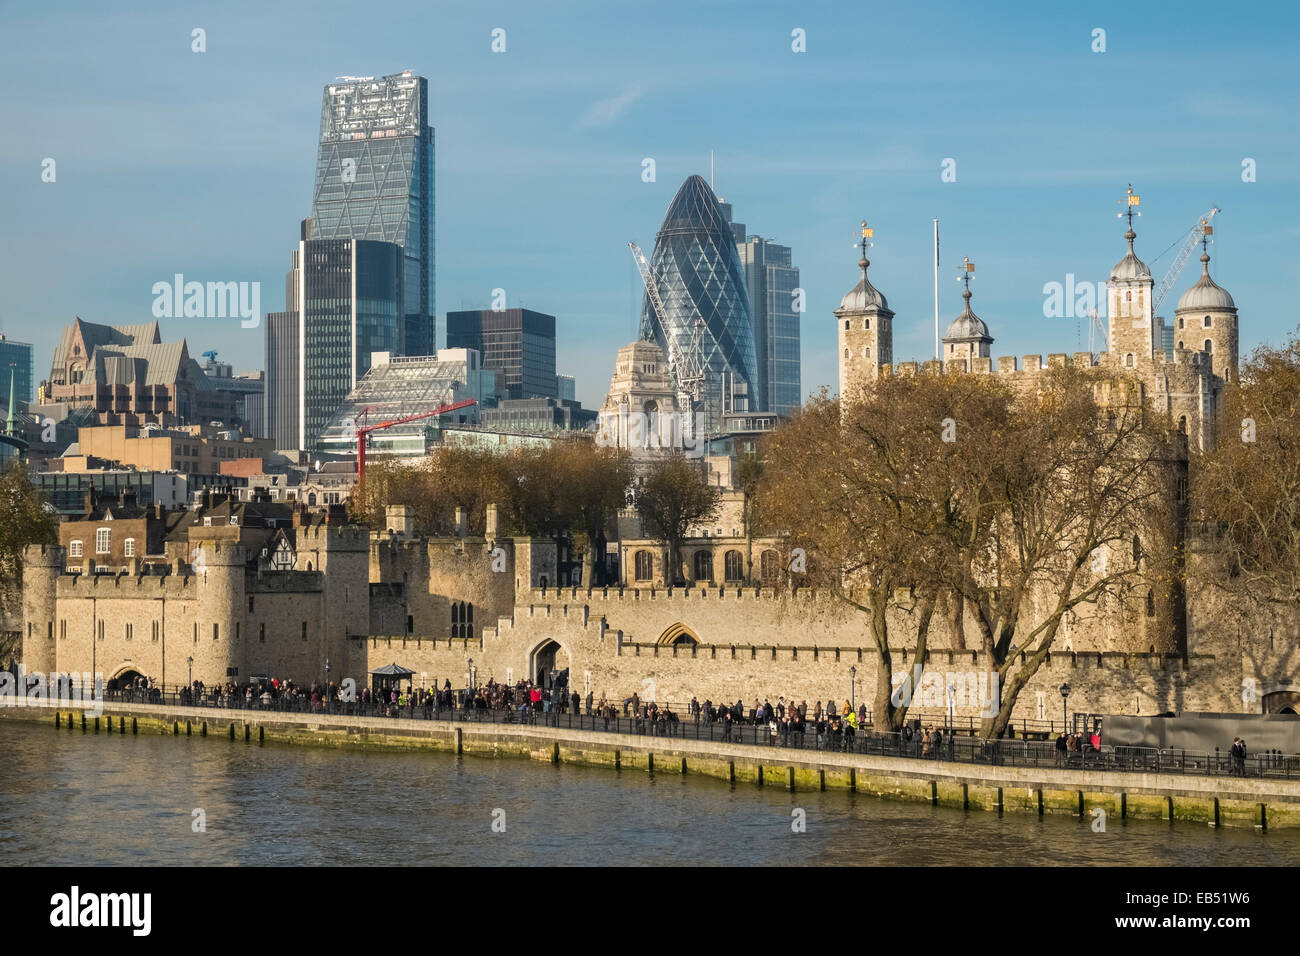 Riverside historique moderne et traditionnel de l'architecture, Londres, Angleterre, Royaume-Uni Banque D'Images